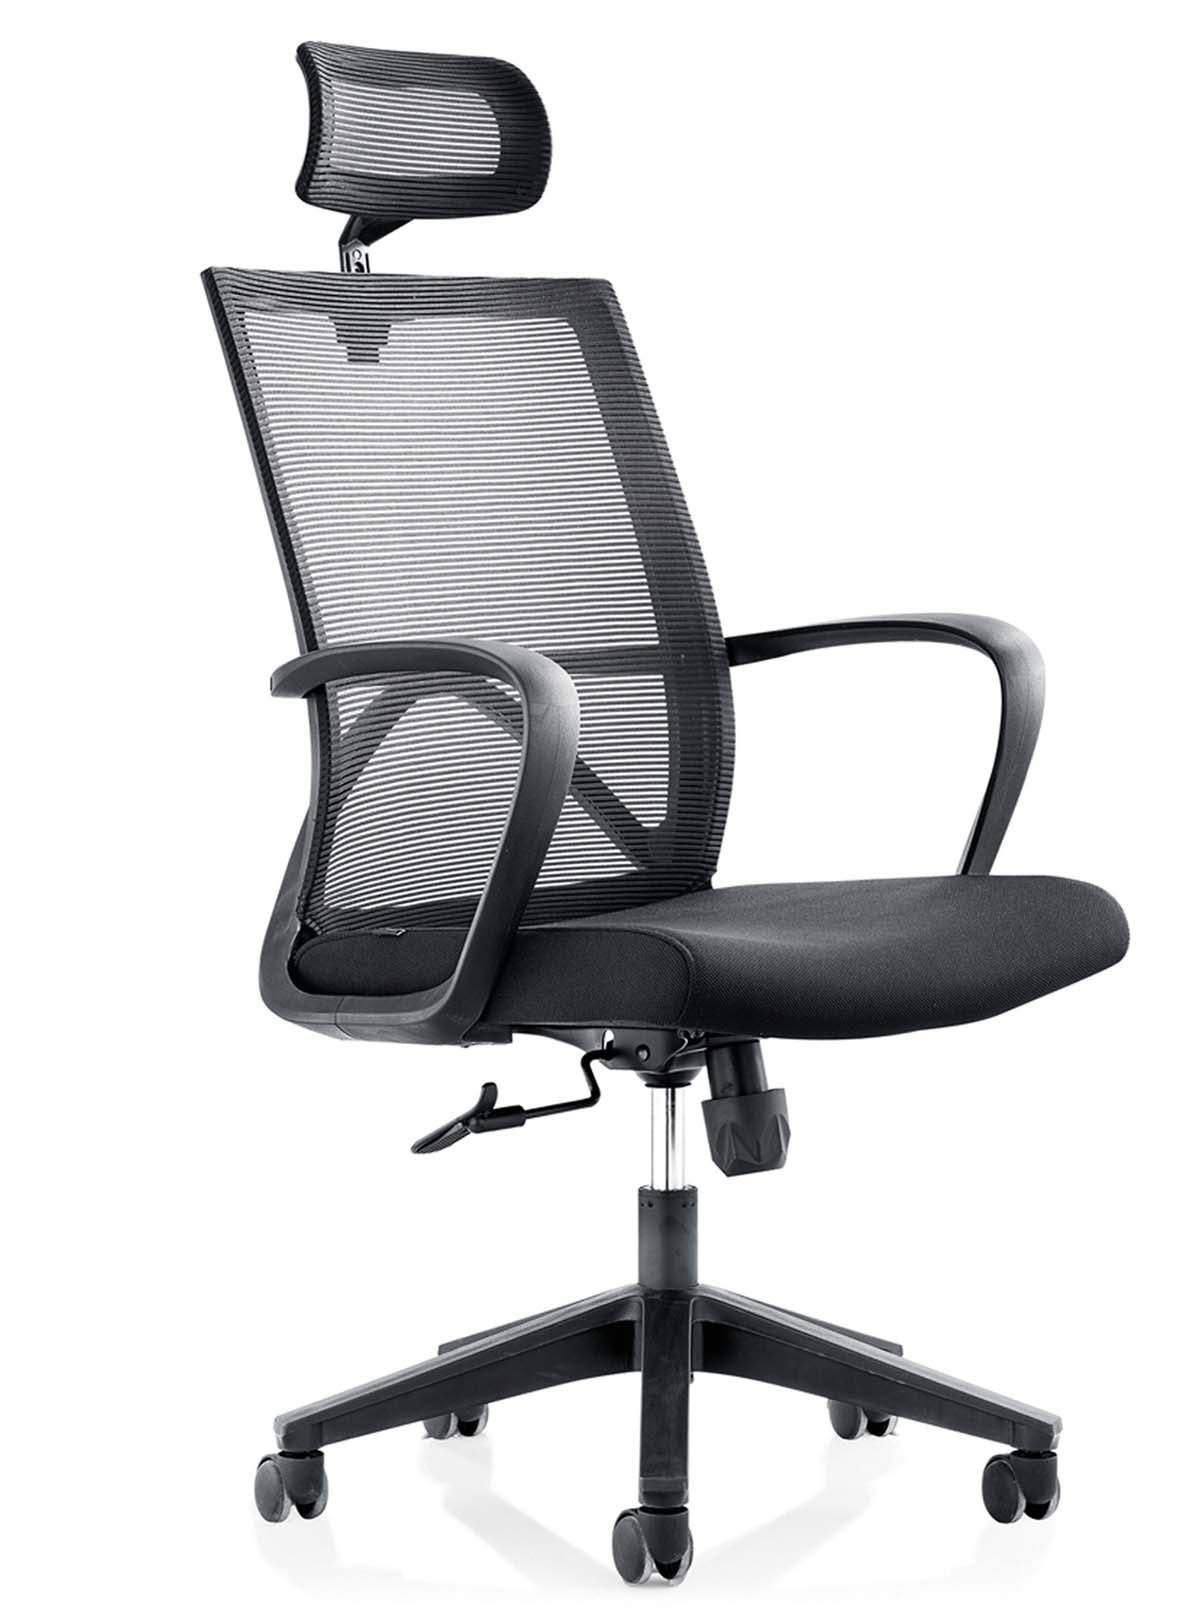 迪欧办公椅-DX6168A